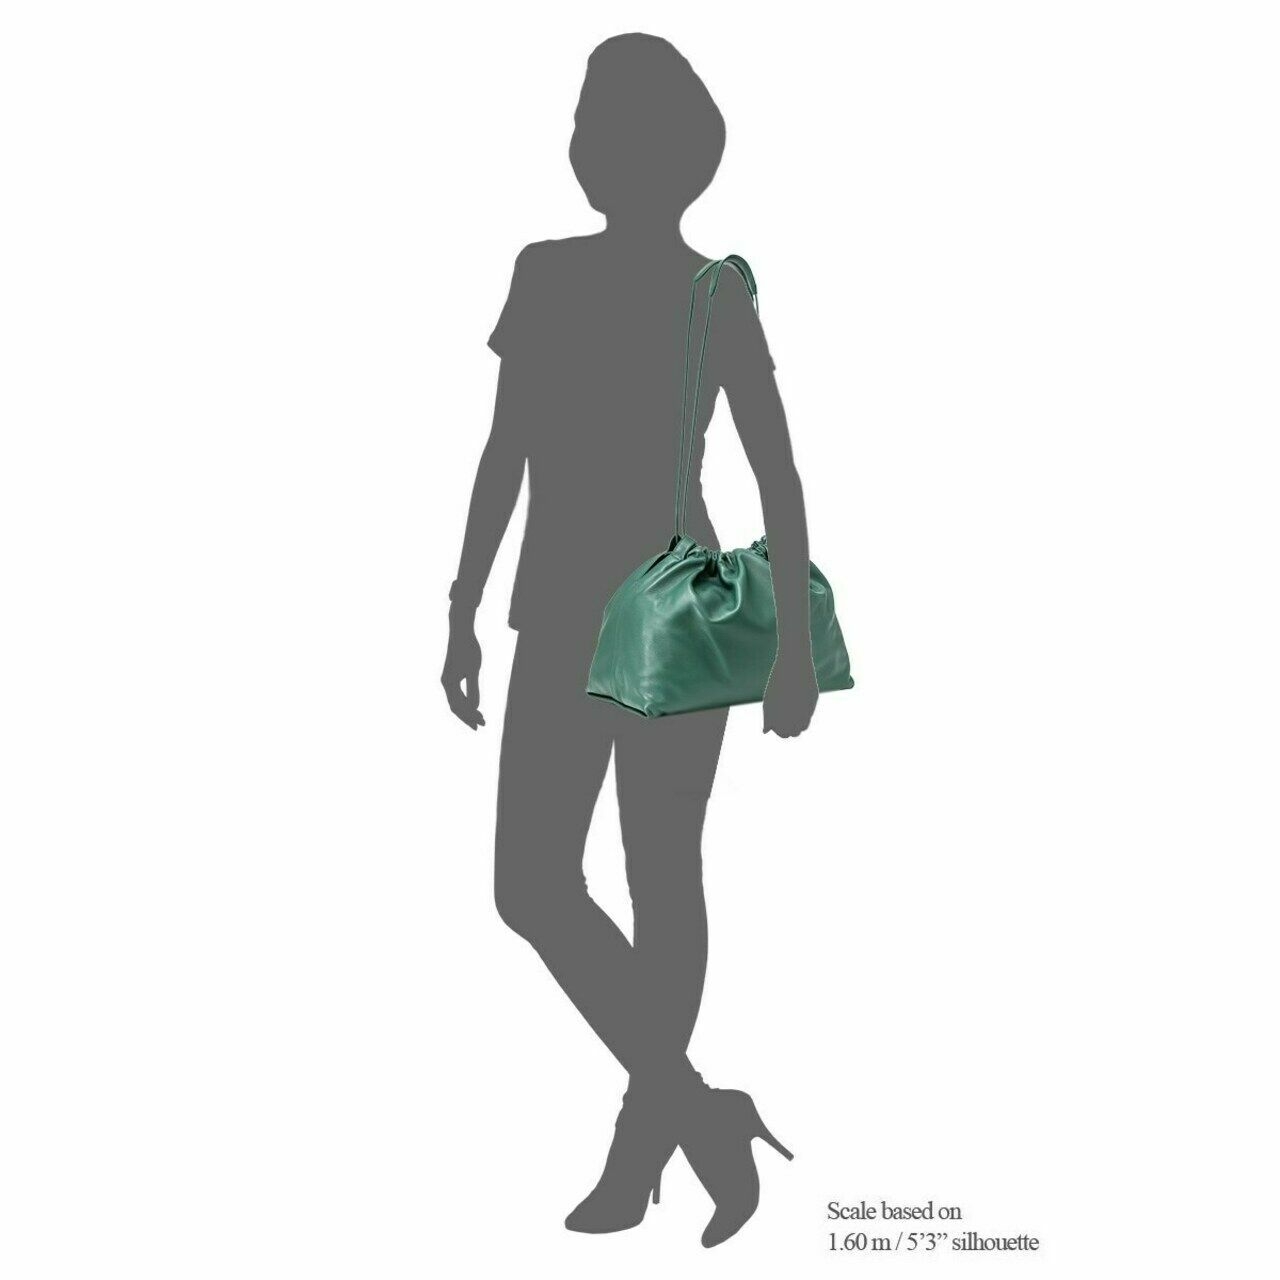 Jil Sander Green Shoulder Bag